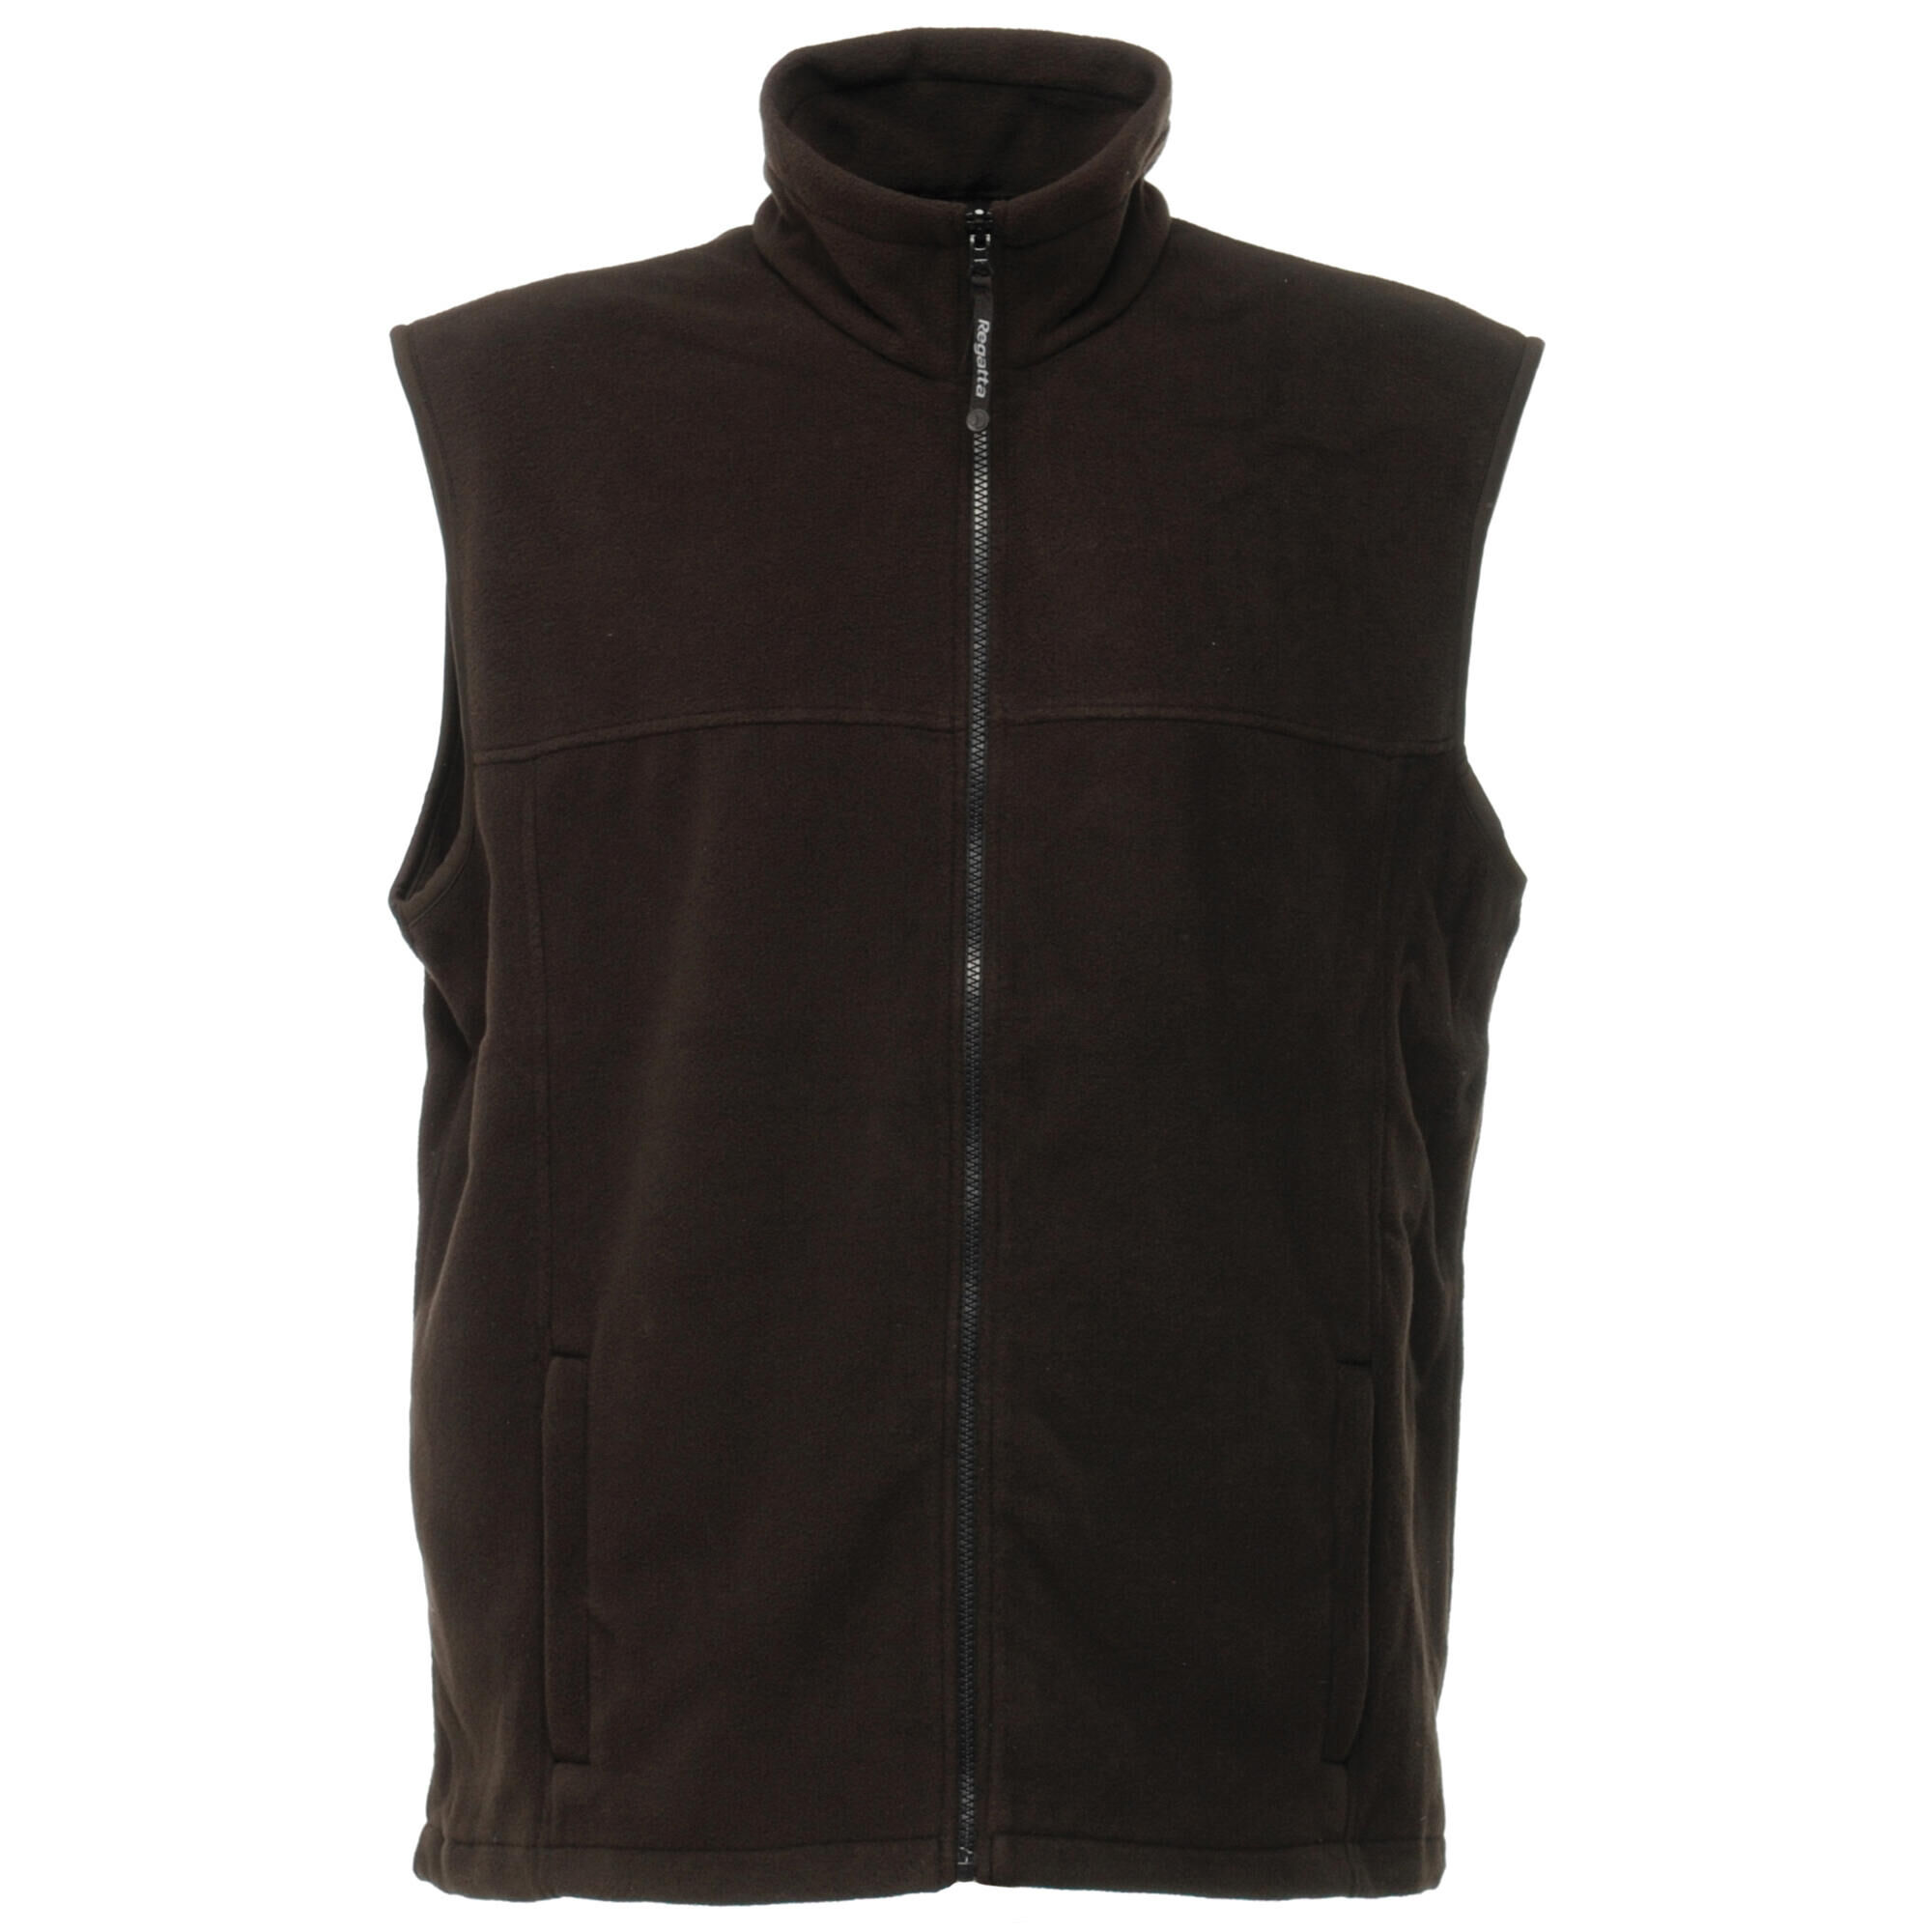 REGATTA Mens Haber II 250 Series Antipill Fleece Bodywarmer / Sleeveless Jacket (Black)